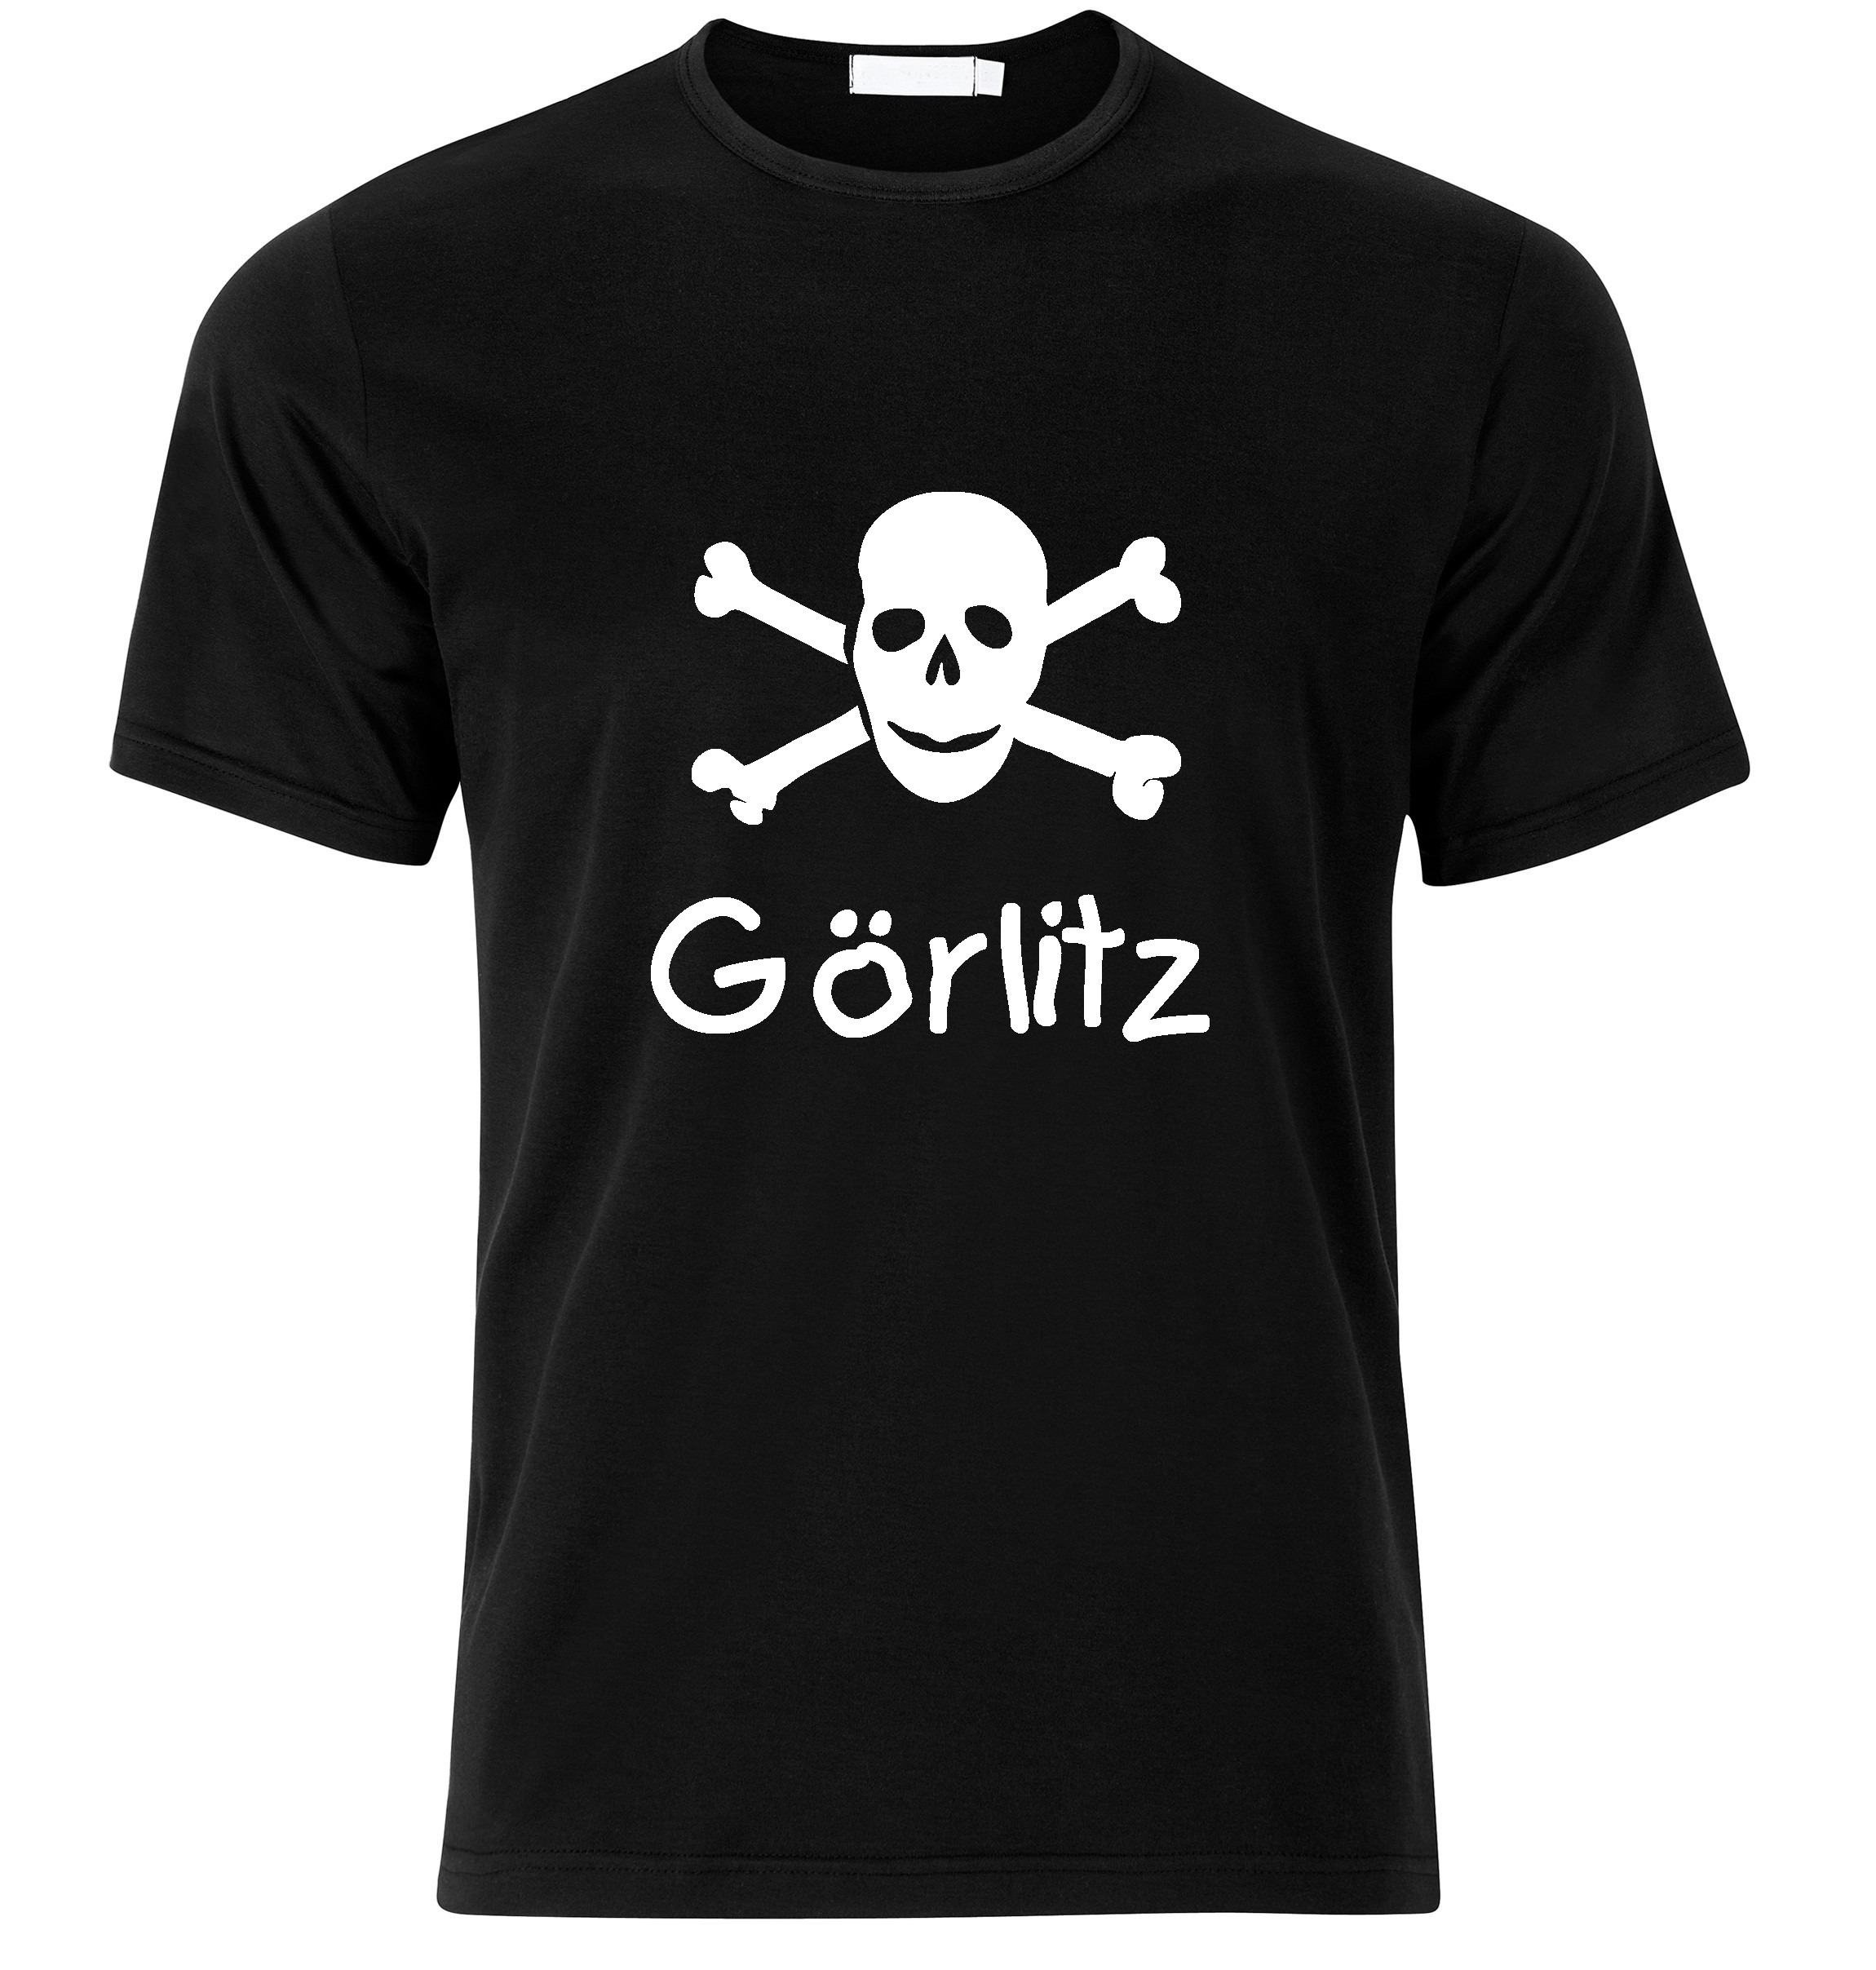 T-Shirt Görlitz Jolly Roger, Totenkopf